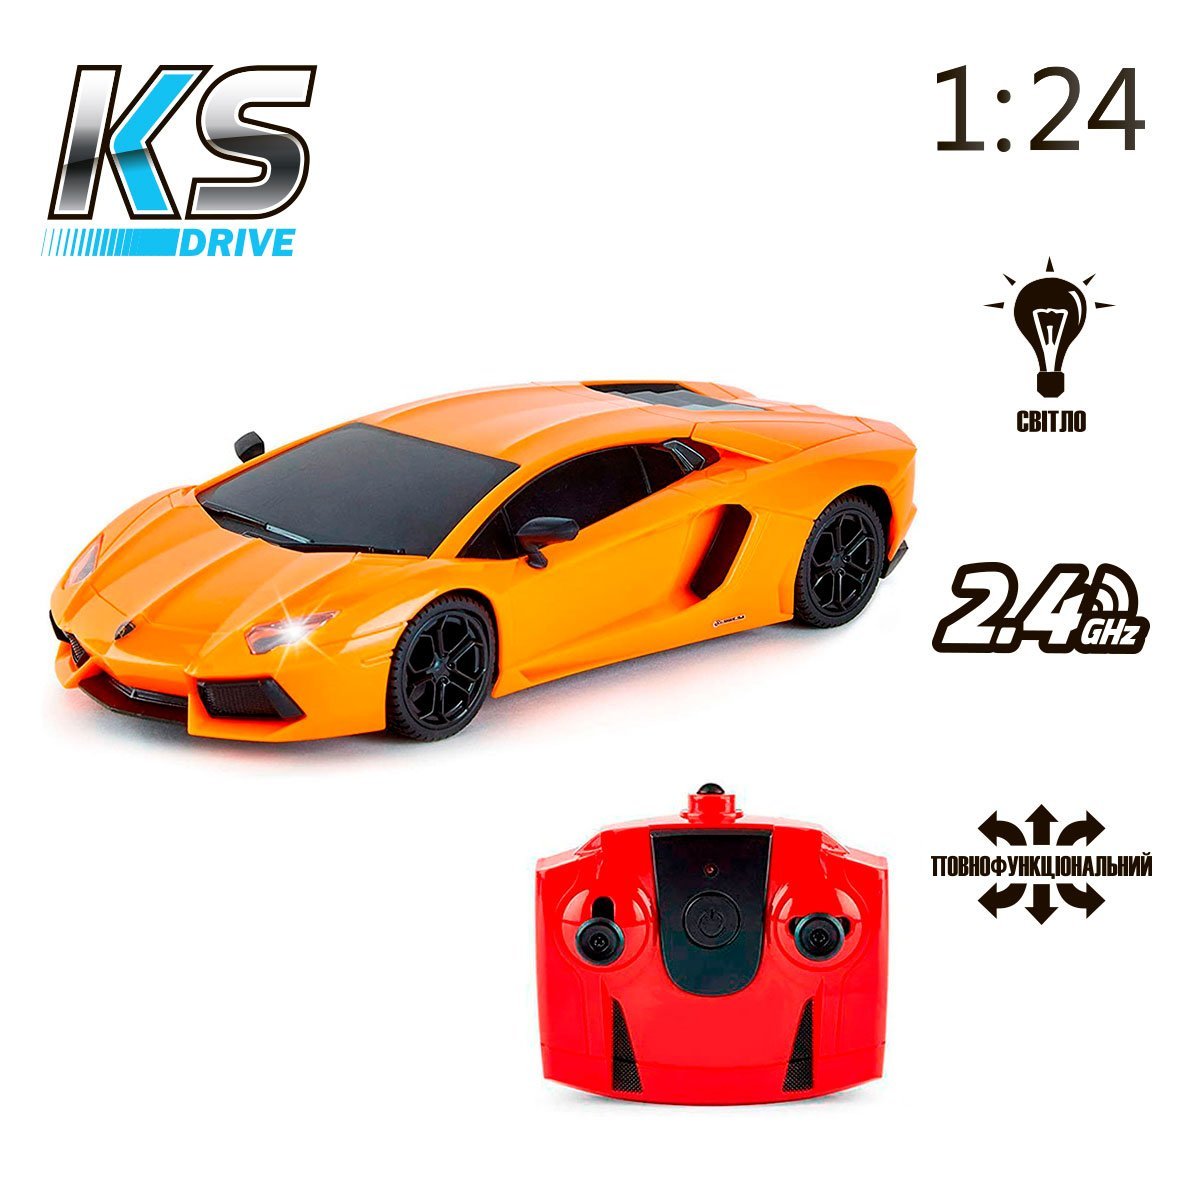 Автомобиль KS Drive на р/у Lamborghini Aventador LP 700-4, 1:24, 2.4Ghz оранжевый (124GLBO) - фото 5